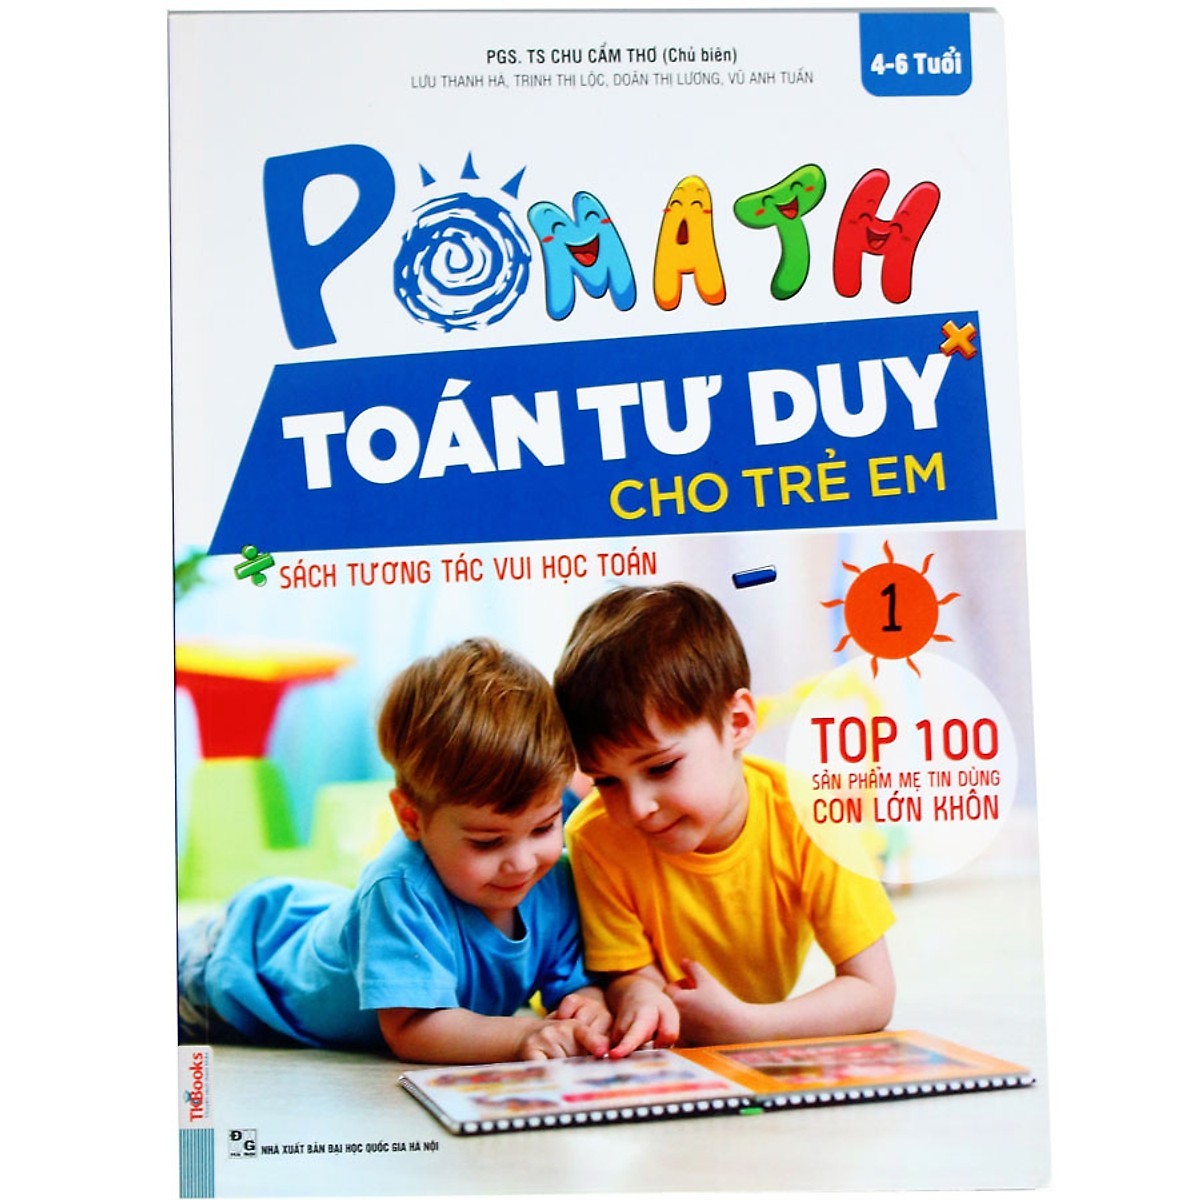 Combo Trọn Bộ Sách PoMath - Toán Tư Duy Cho Trẻ Em 4-6 Tuổi (6 cuốn)  (Tặng kèm iring siêu dễ thương s2)